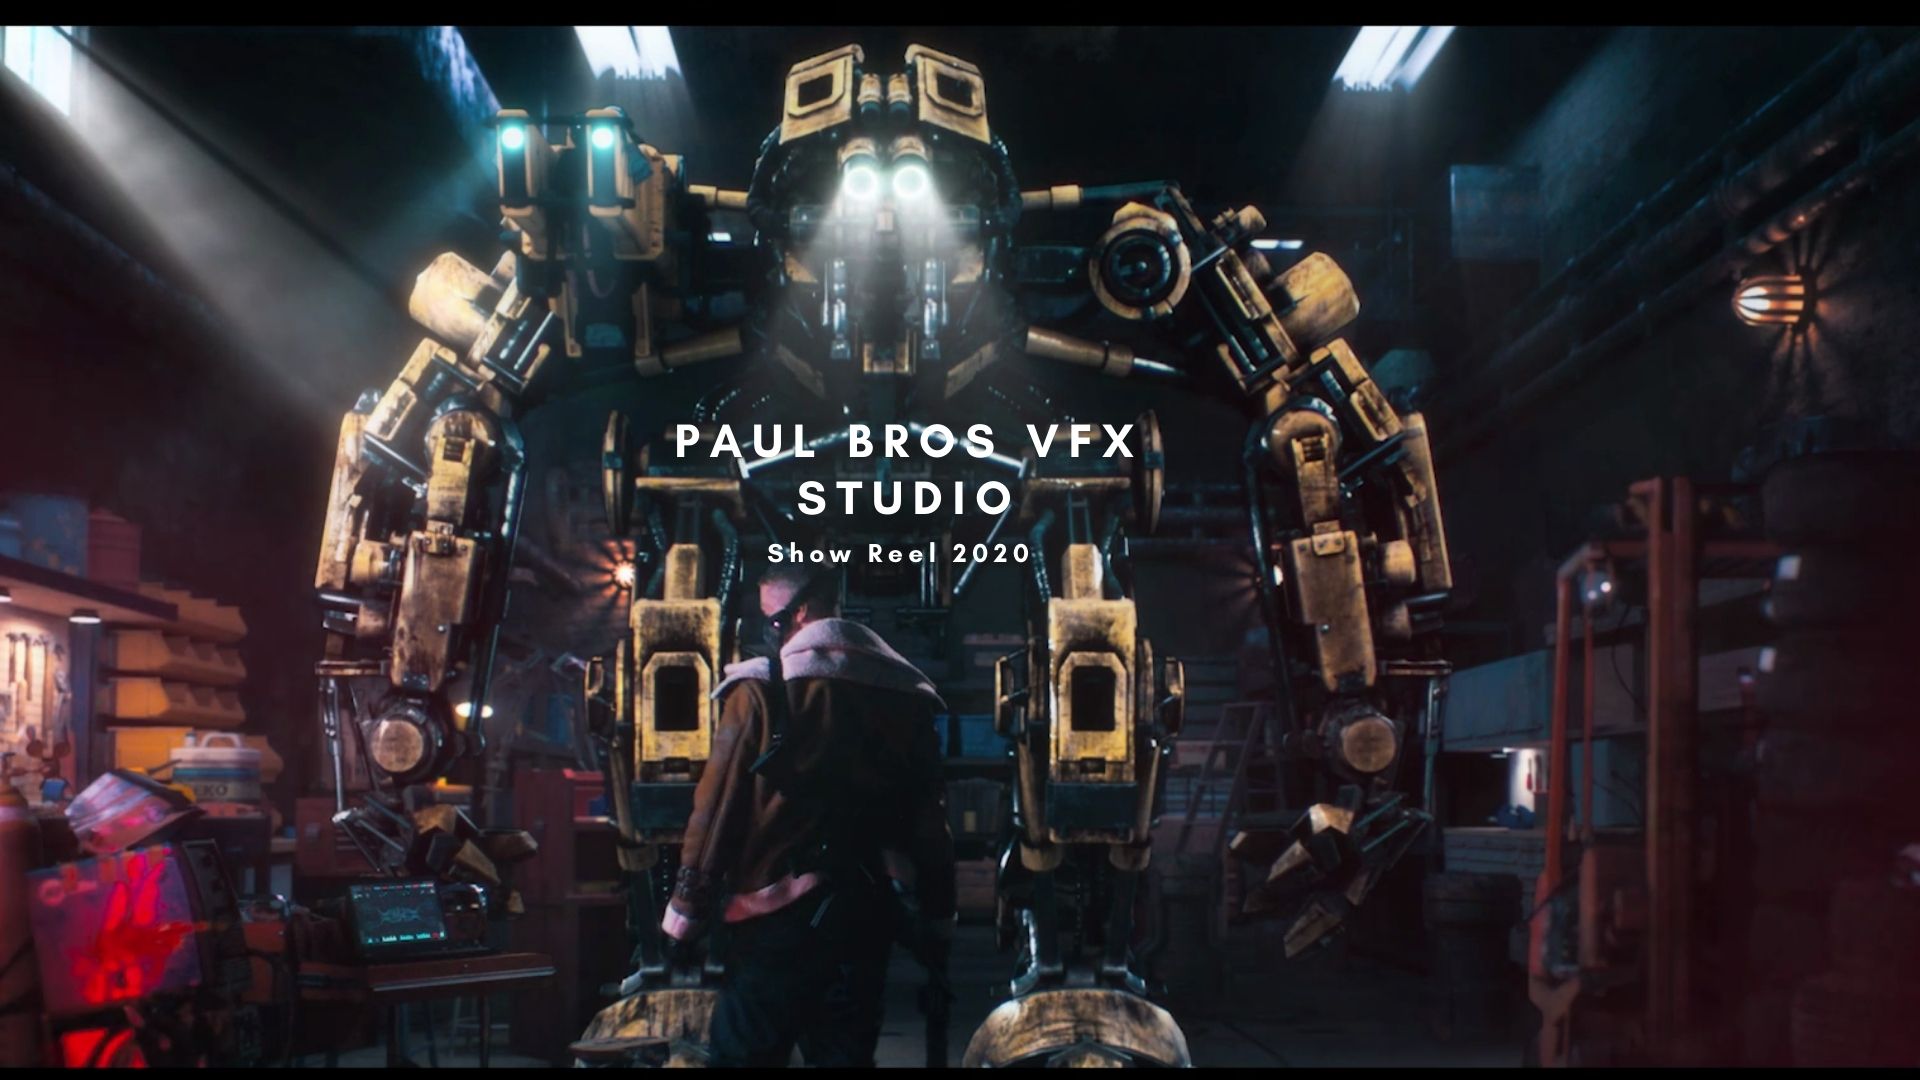 Paul Bros VFX Studio -Show Reel 2020